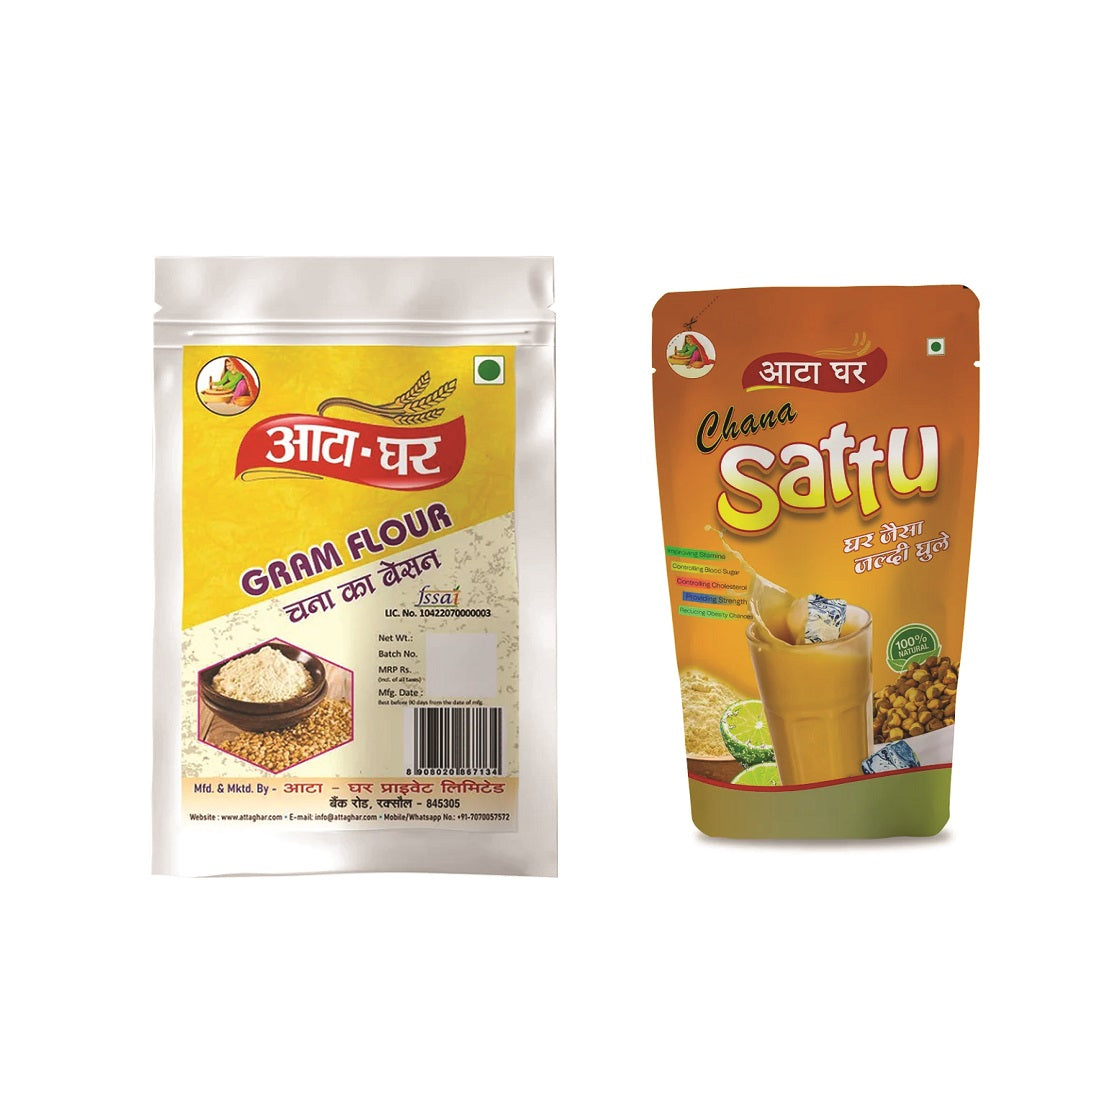 Atta-Ghar Combo of Besan and Sattu Flour, 1 kg each